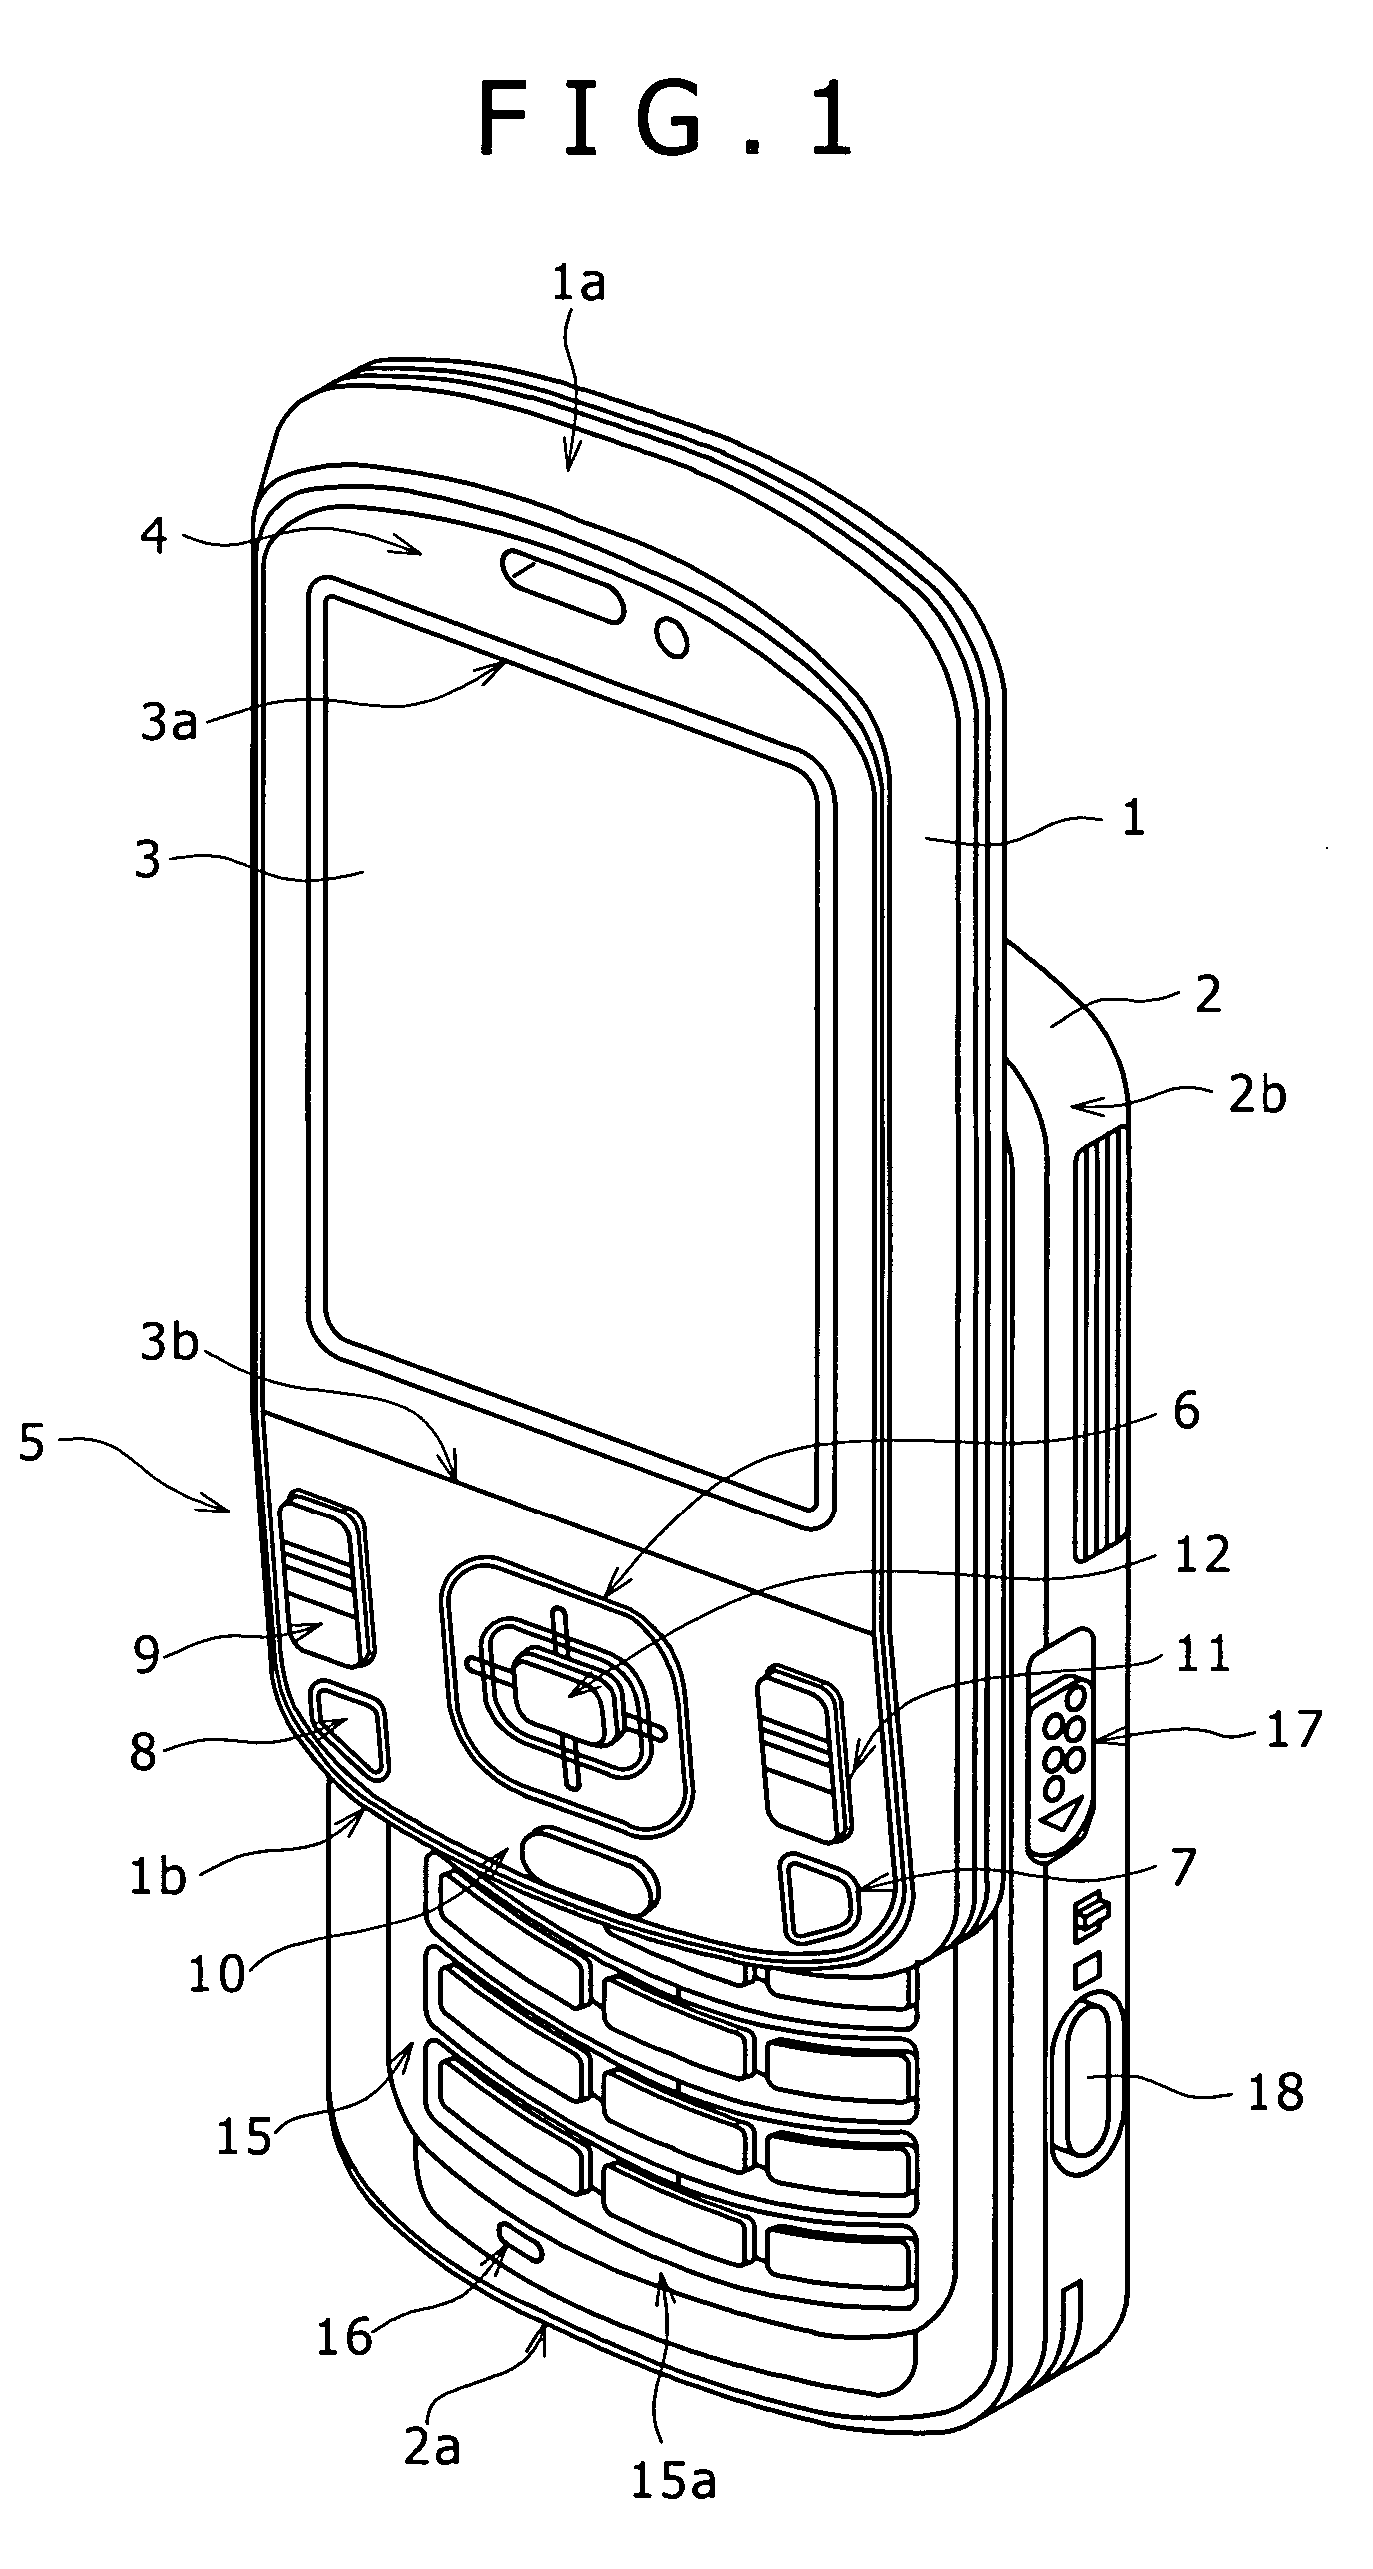 Portable terminal device